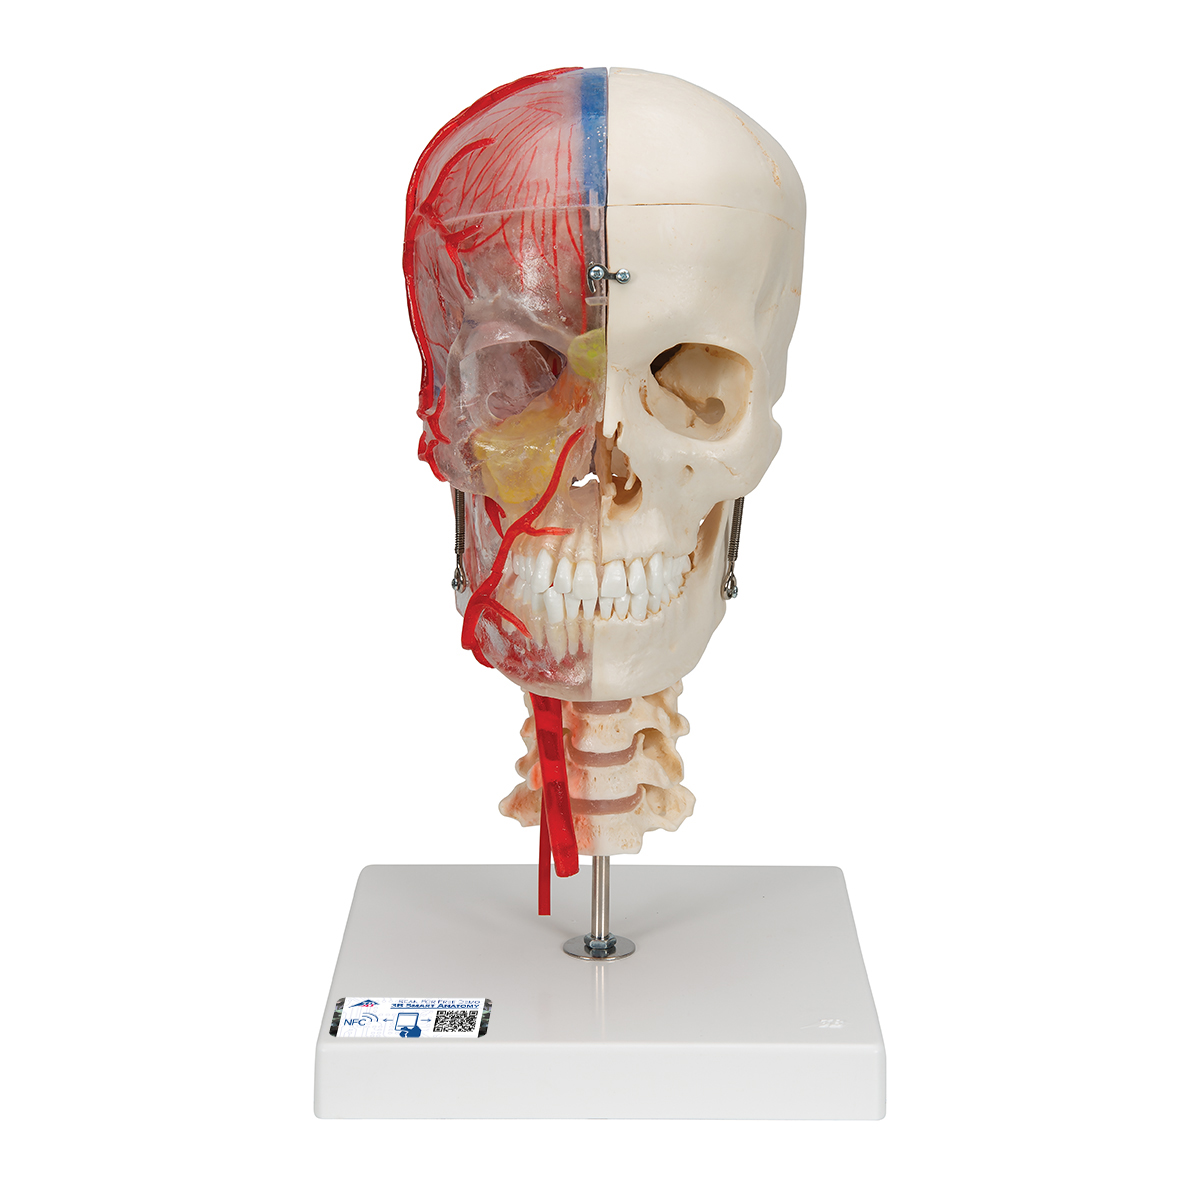 BONElike™ Schädel Modell, transparent und didaktisch aufbereitet, 7-teilig - 3B Smart Anatomy, Bestellnummer 1000064, A283, 3B Scientific